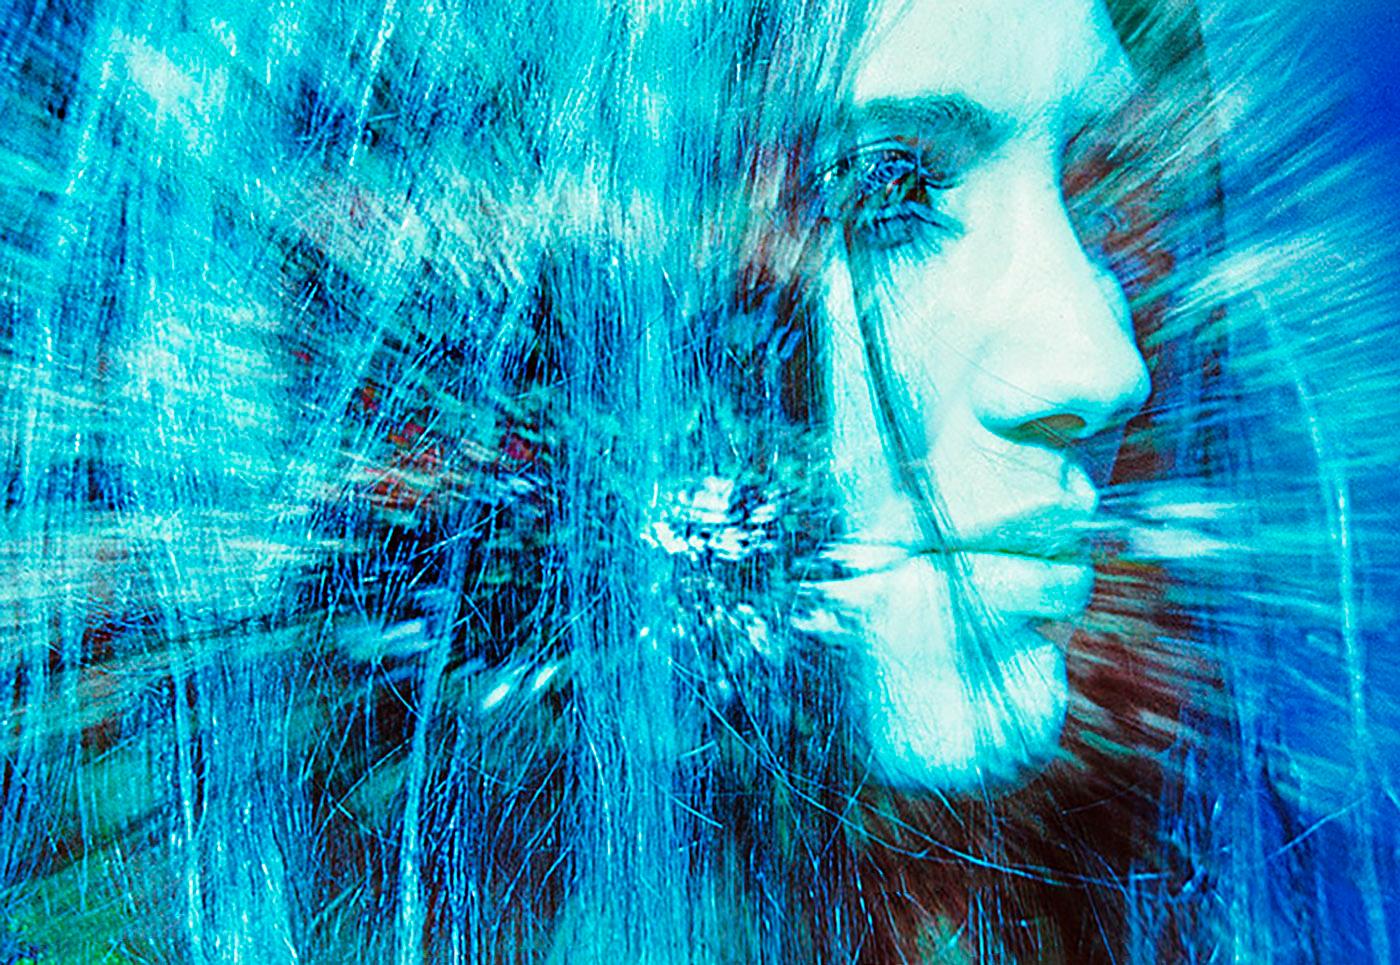 Mitchell Funk Abstract Photograph – Das psychedelische Porträt eines jungen Hippie  Mit manipulierter Farbe,  Kali